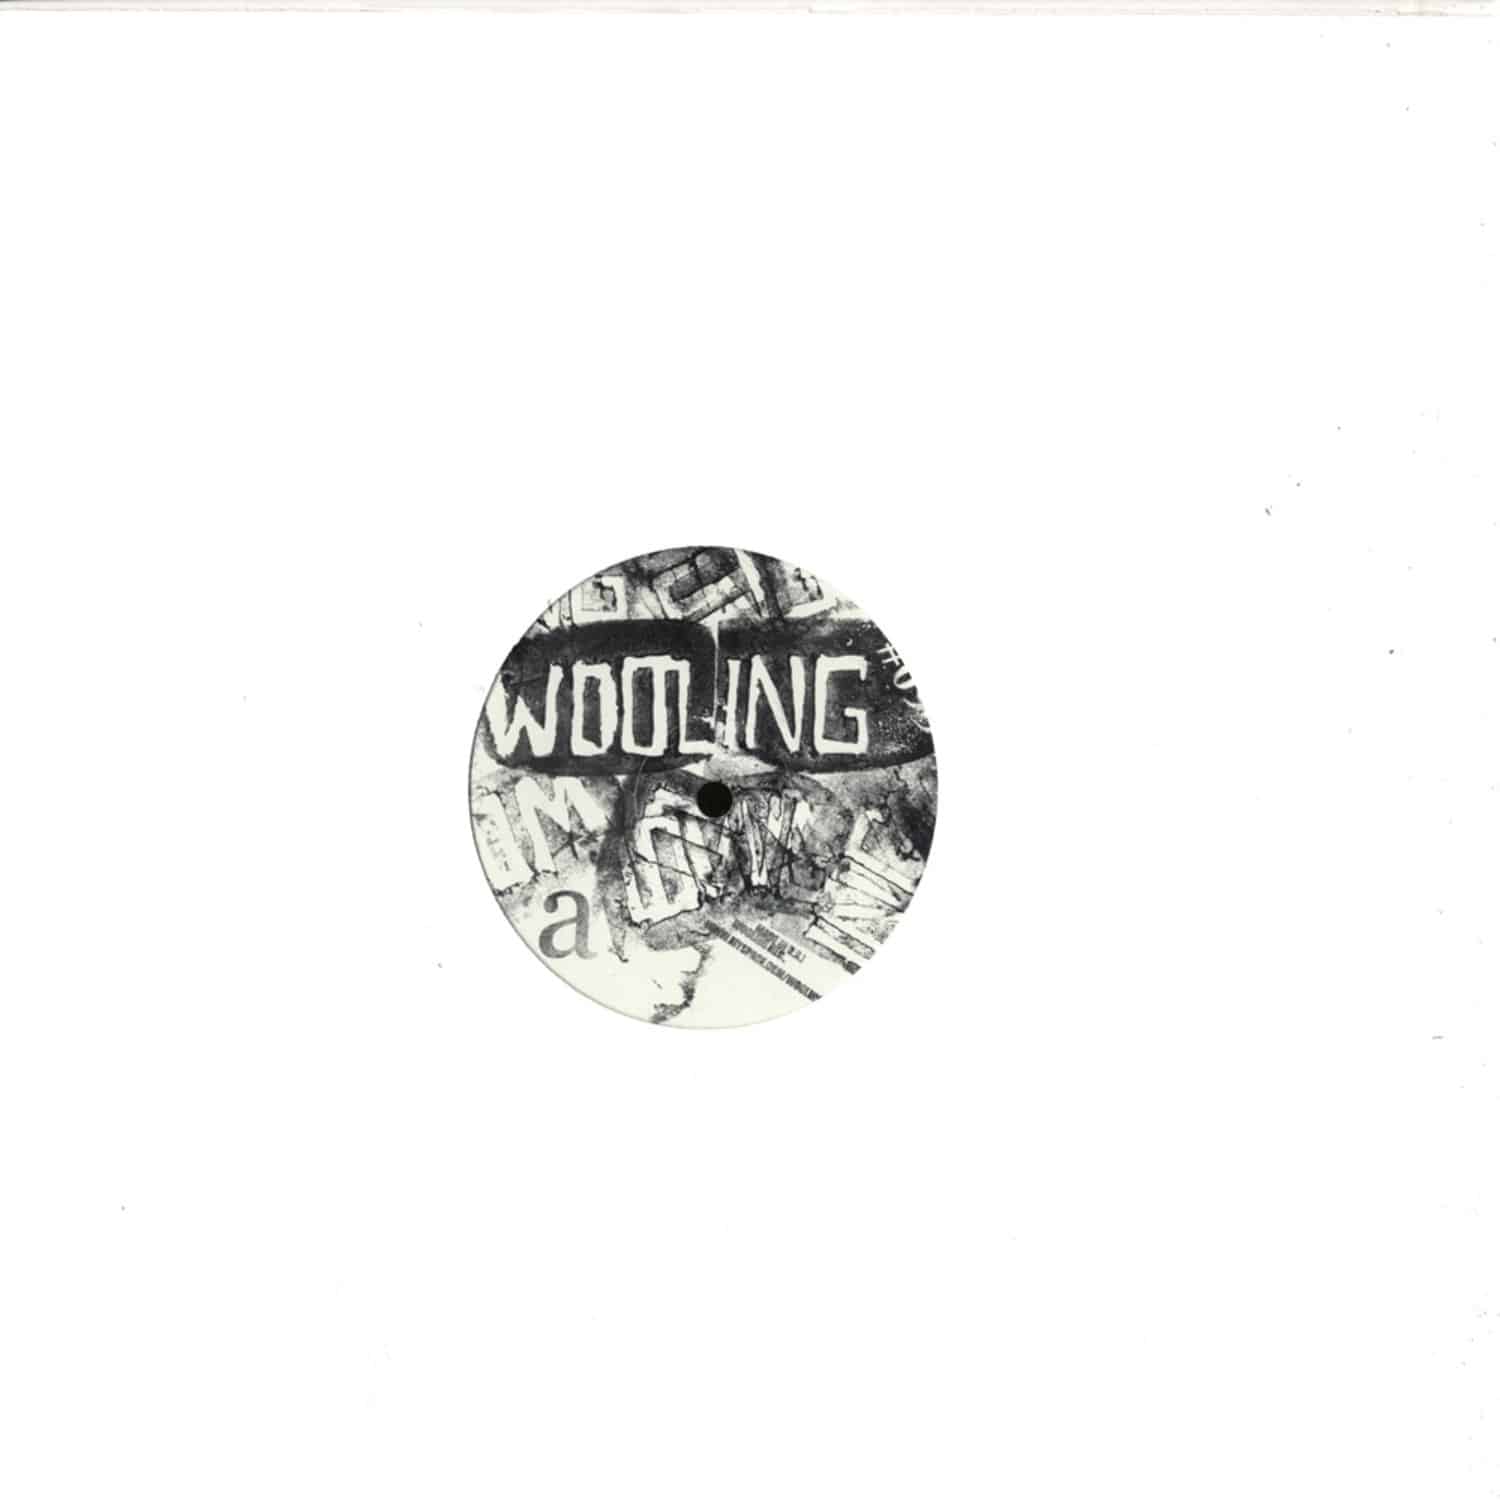 Wooling - 99